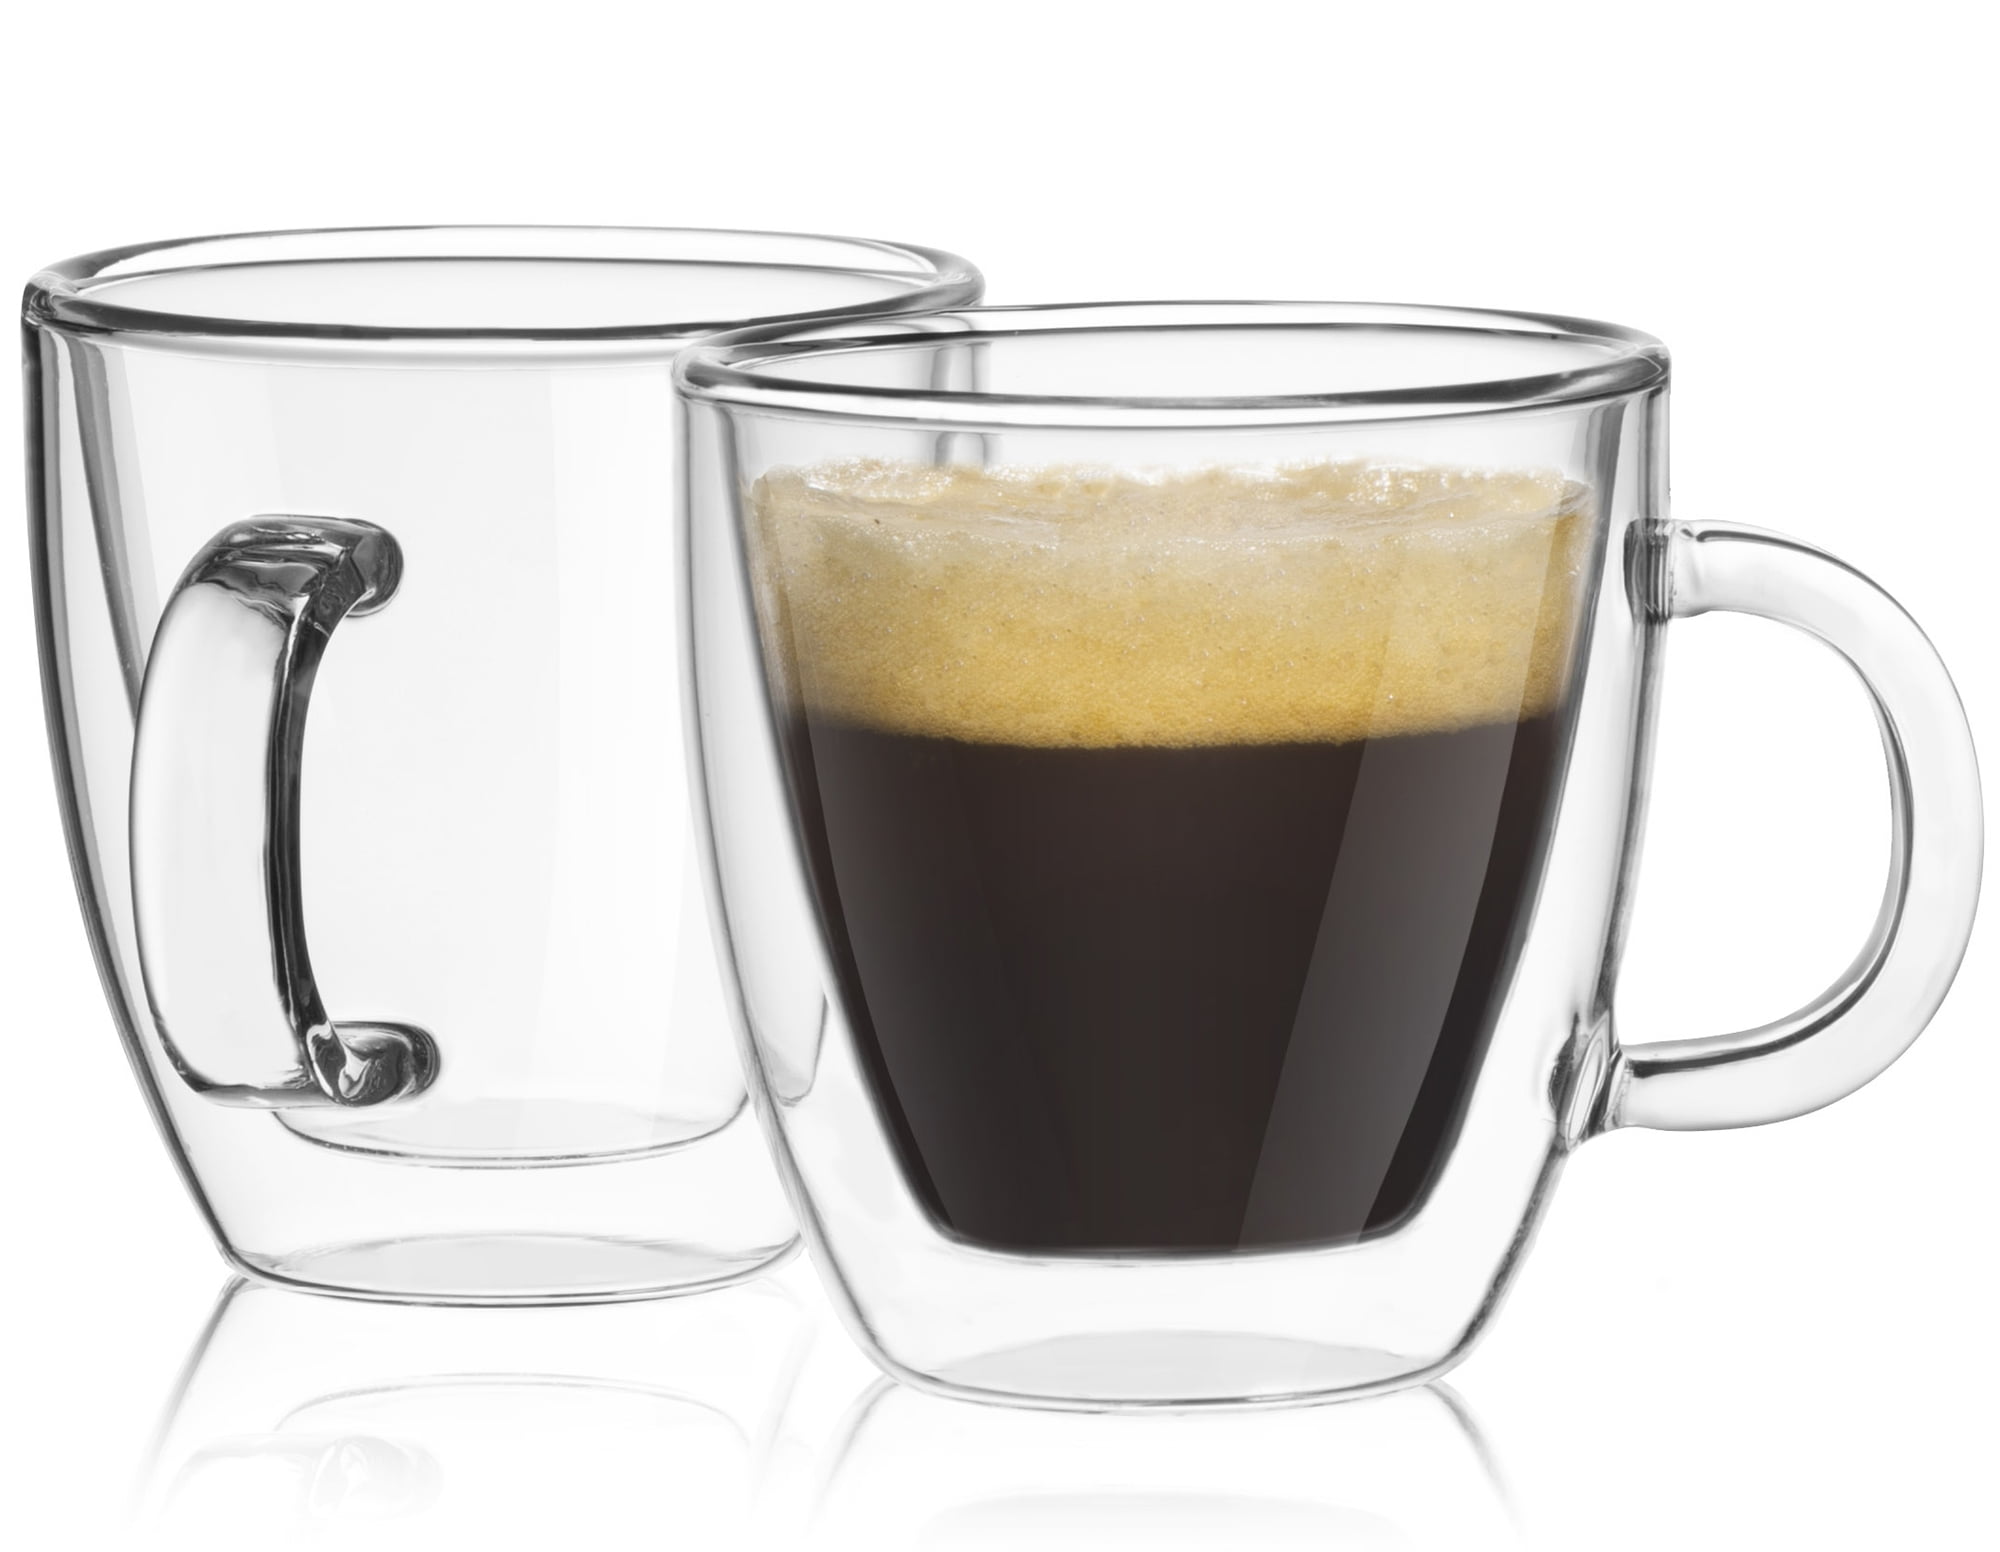 JoyJolt Pila Double Walled Espresso Glass - 3 oz - Set of 4, Clear